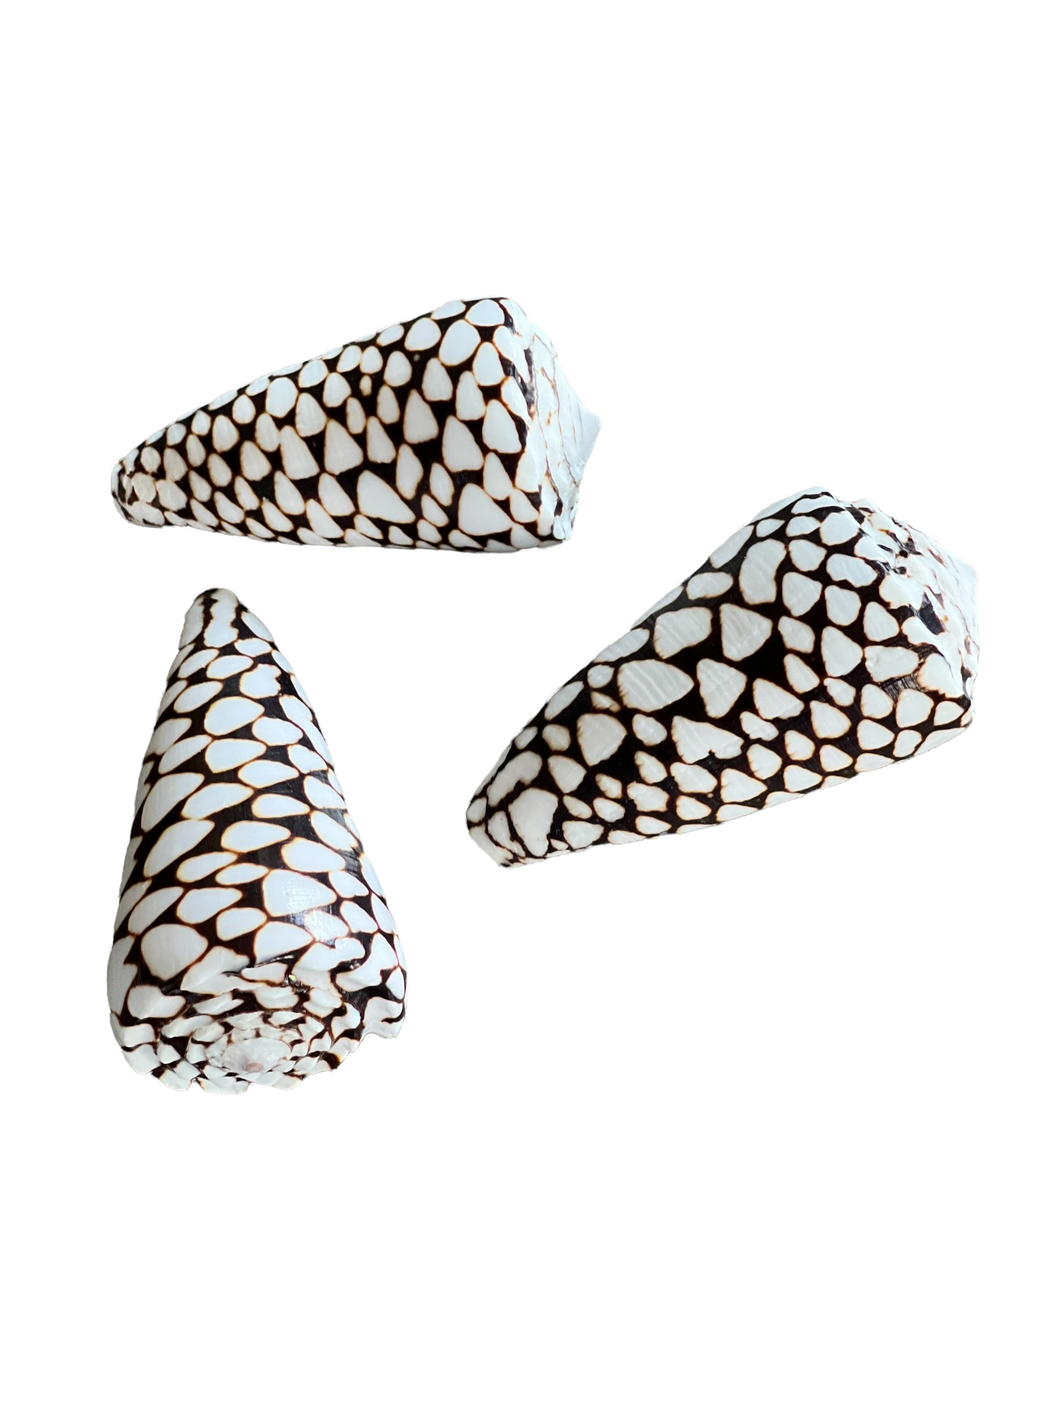 Conus Leopardus Shells Size, 3